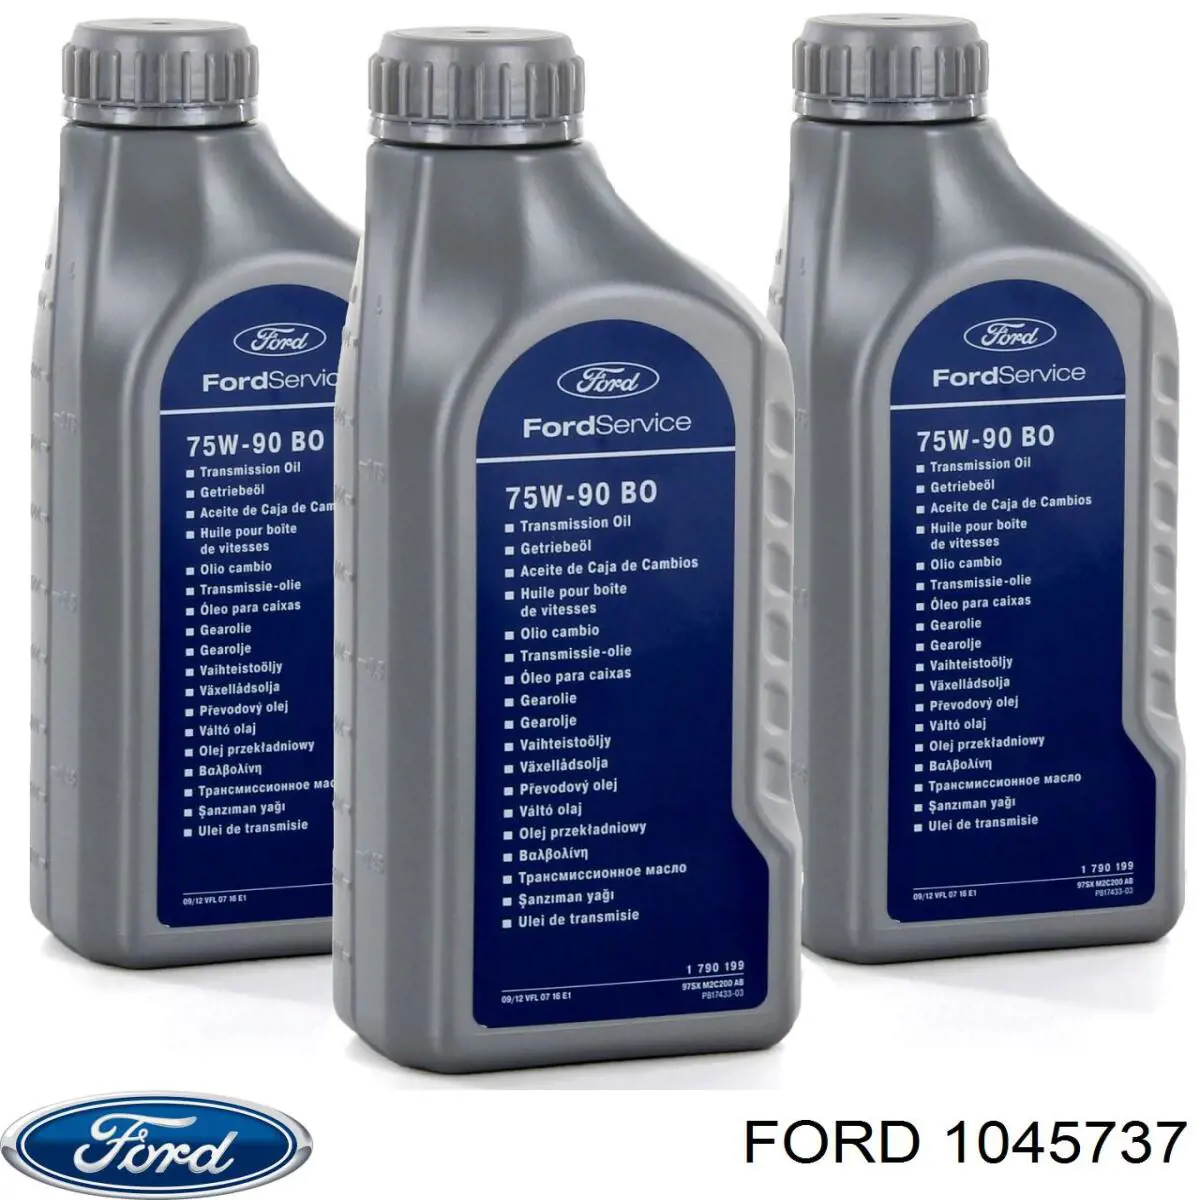 Ford Transmission Oil Sintético 75W-90 1 L Aceite transmisión (1045737)